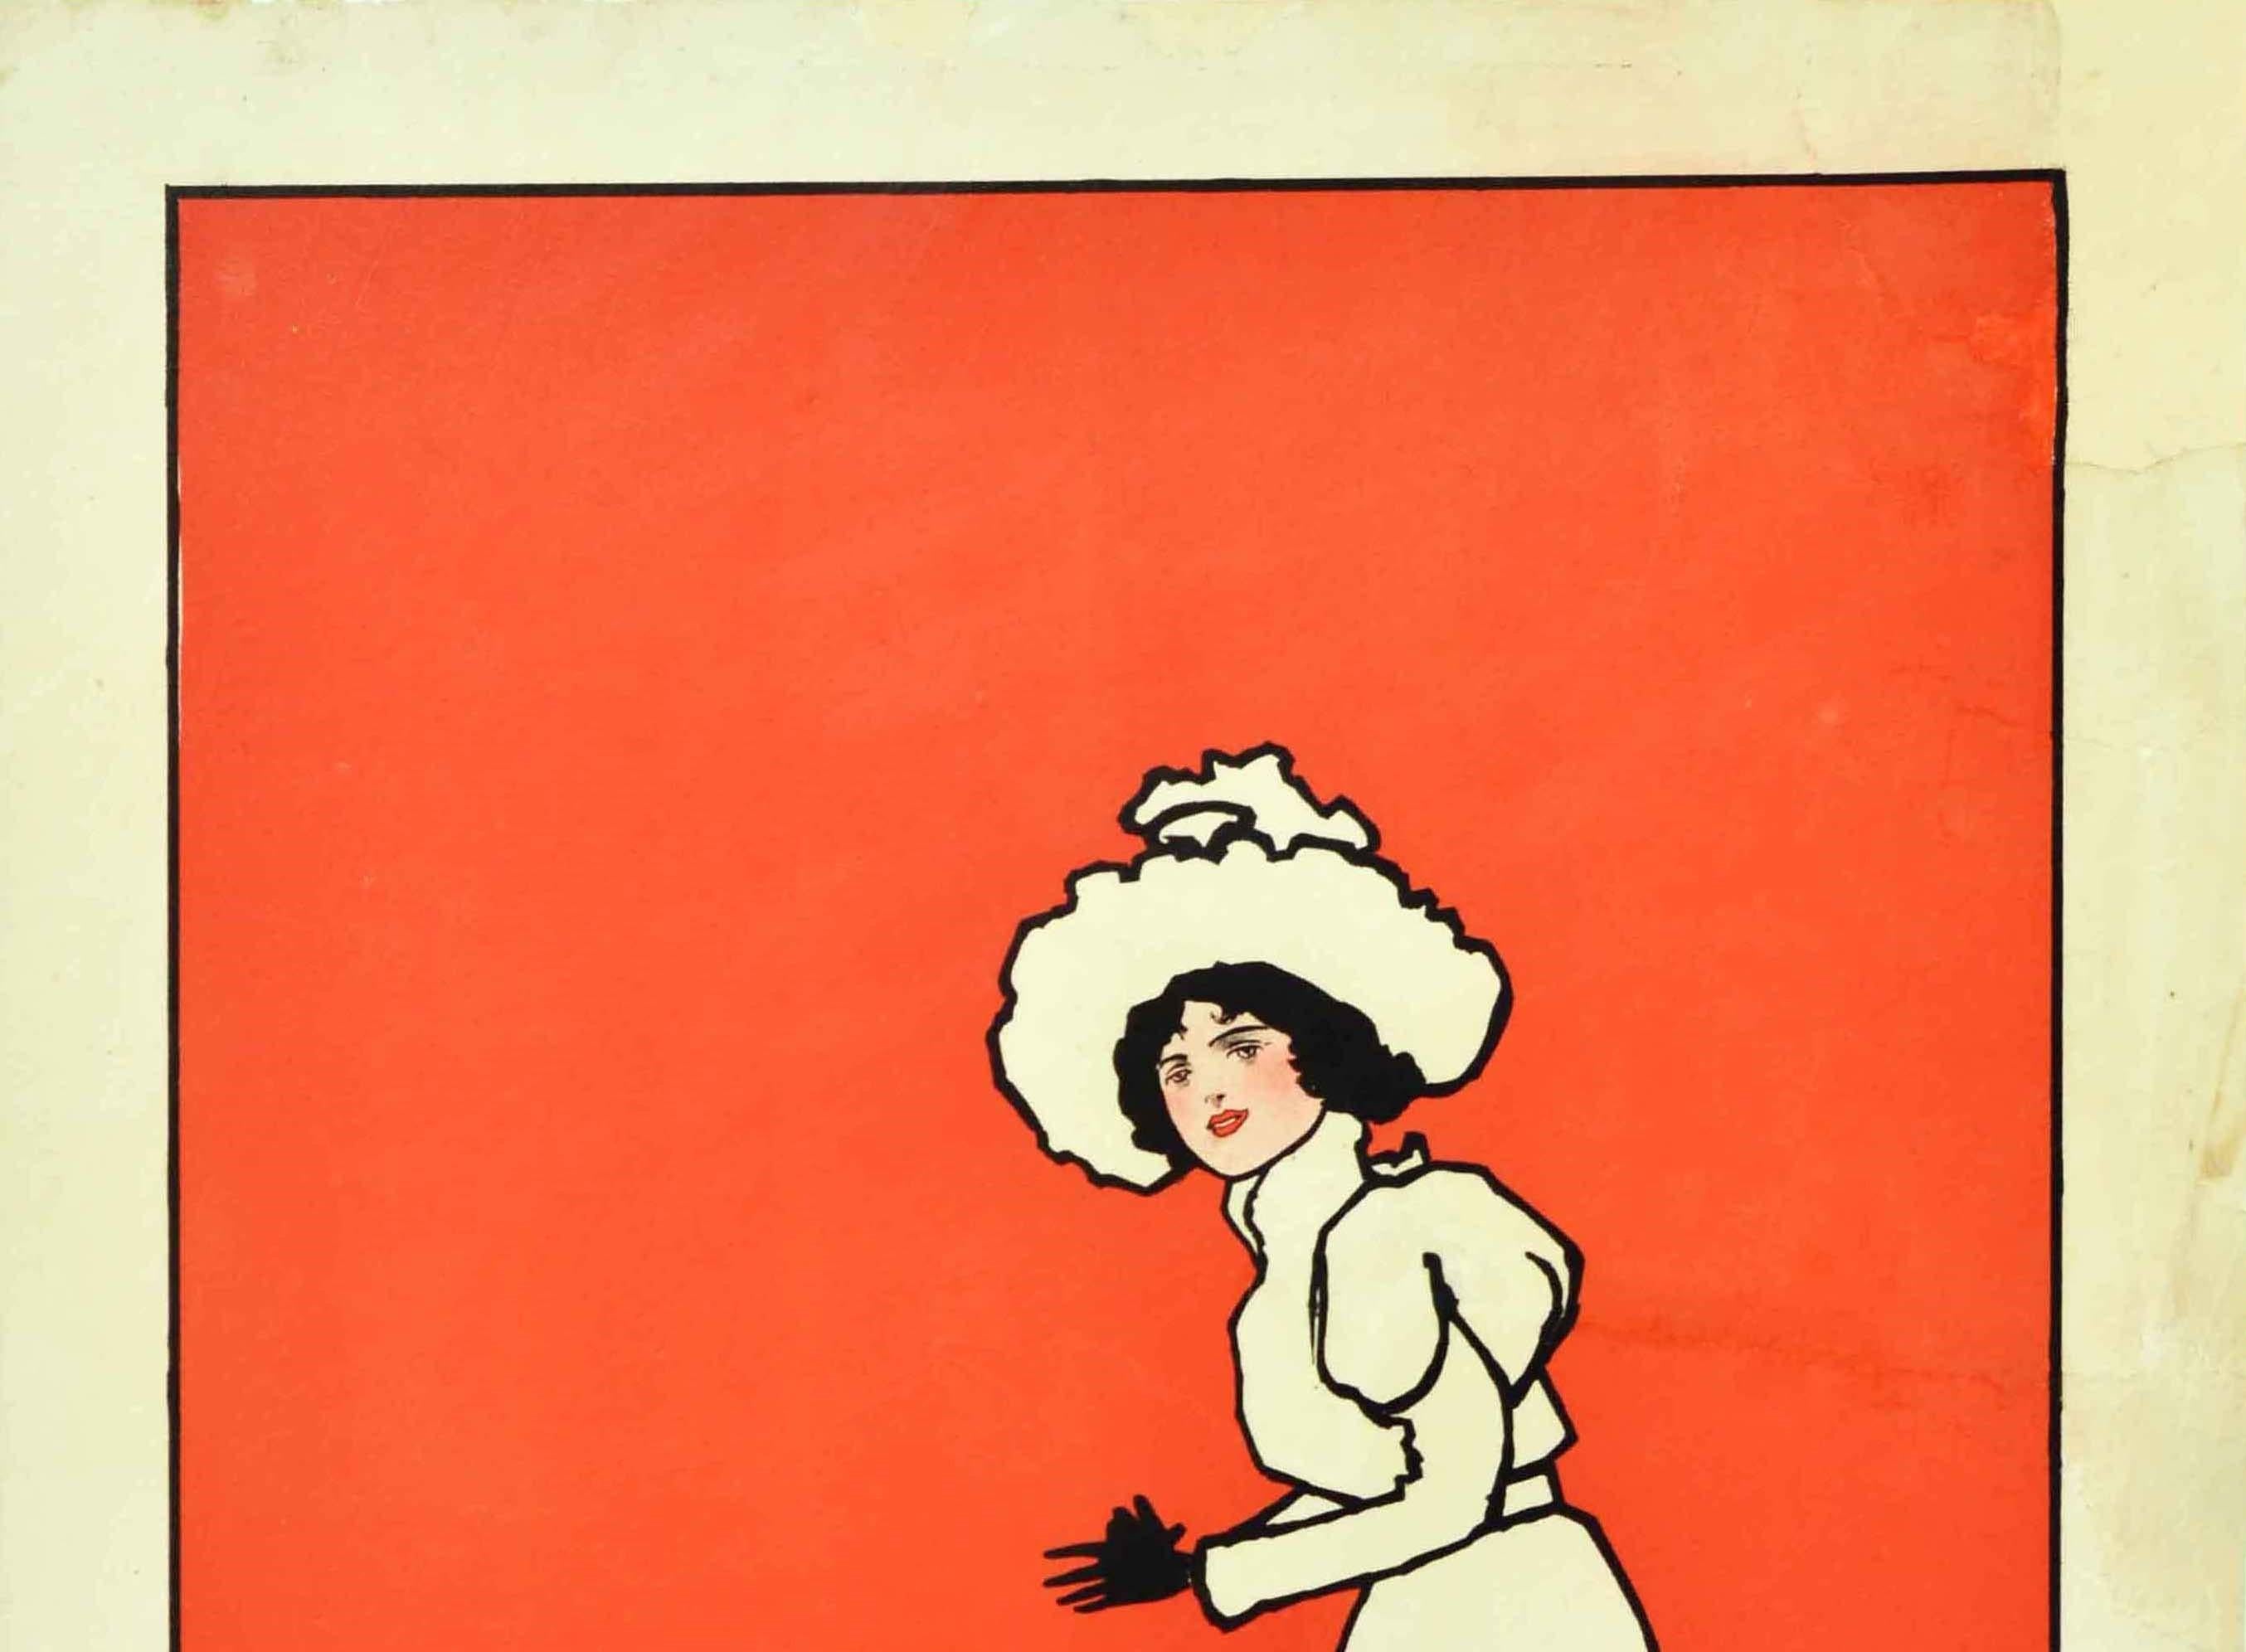 Affiche publicitaire originale de mode ancienne présentant une illustration du célèbre artiste John Hassall (1868-1948) d'une dame victorienne élégamment vêtue d'une longue robe blanche et d'un chapeau blanc regardant vers le spectateur, représentée